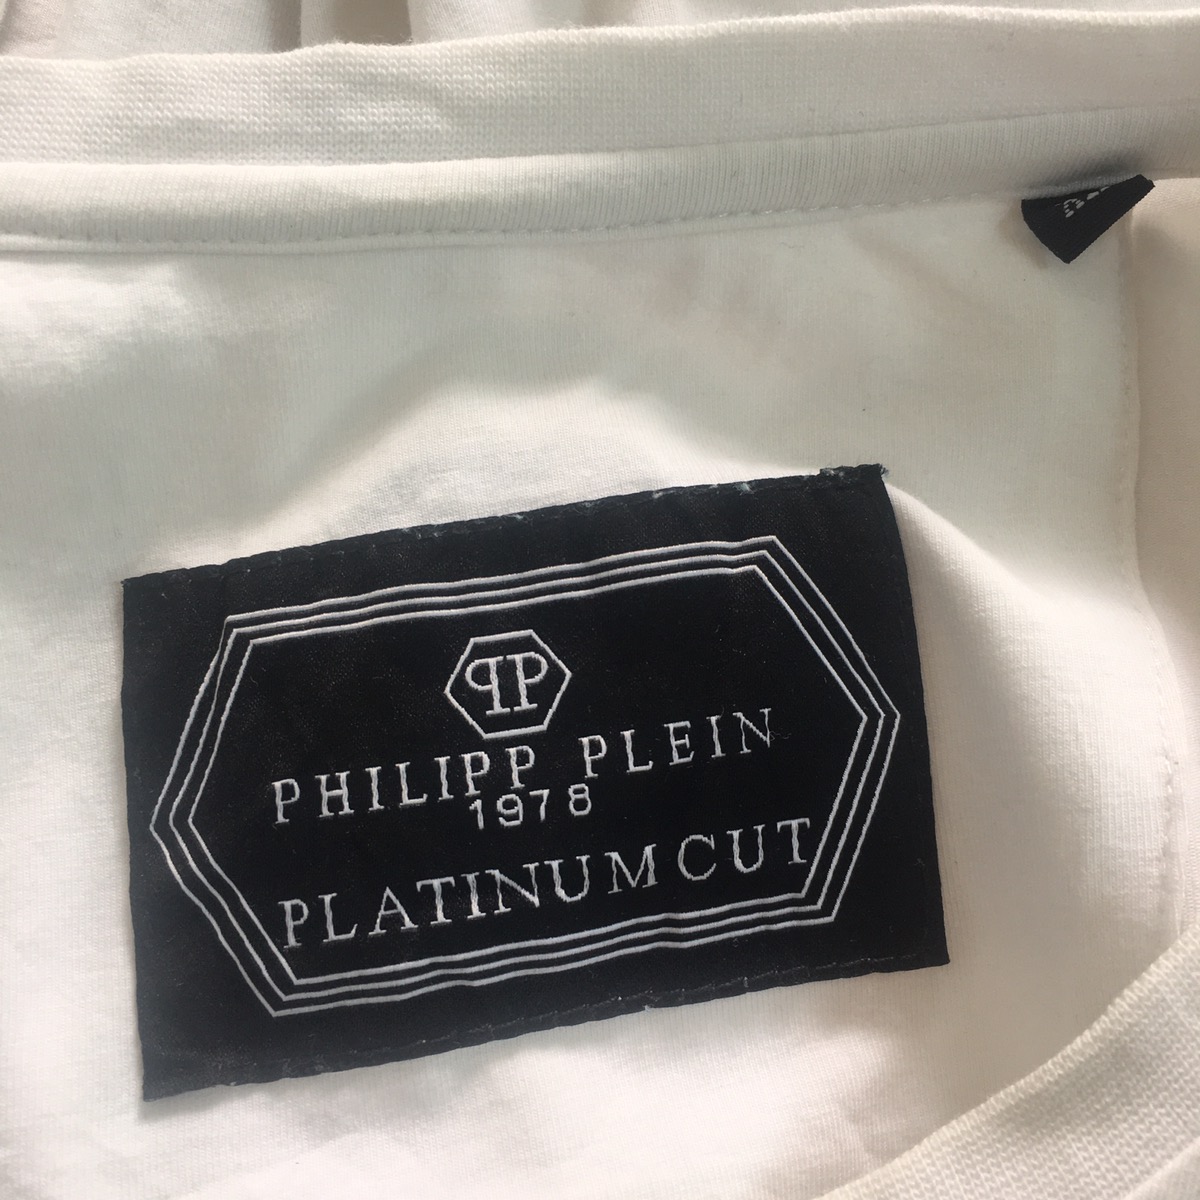 Philipp Plein Platinum Cut Made in Italy - 11